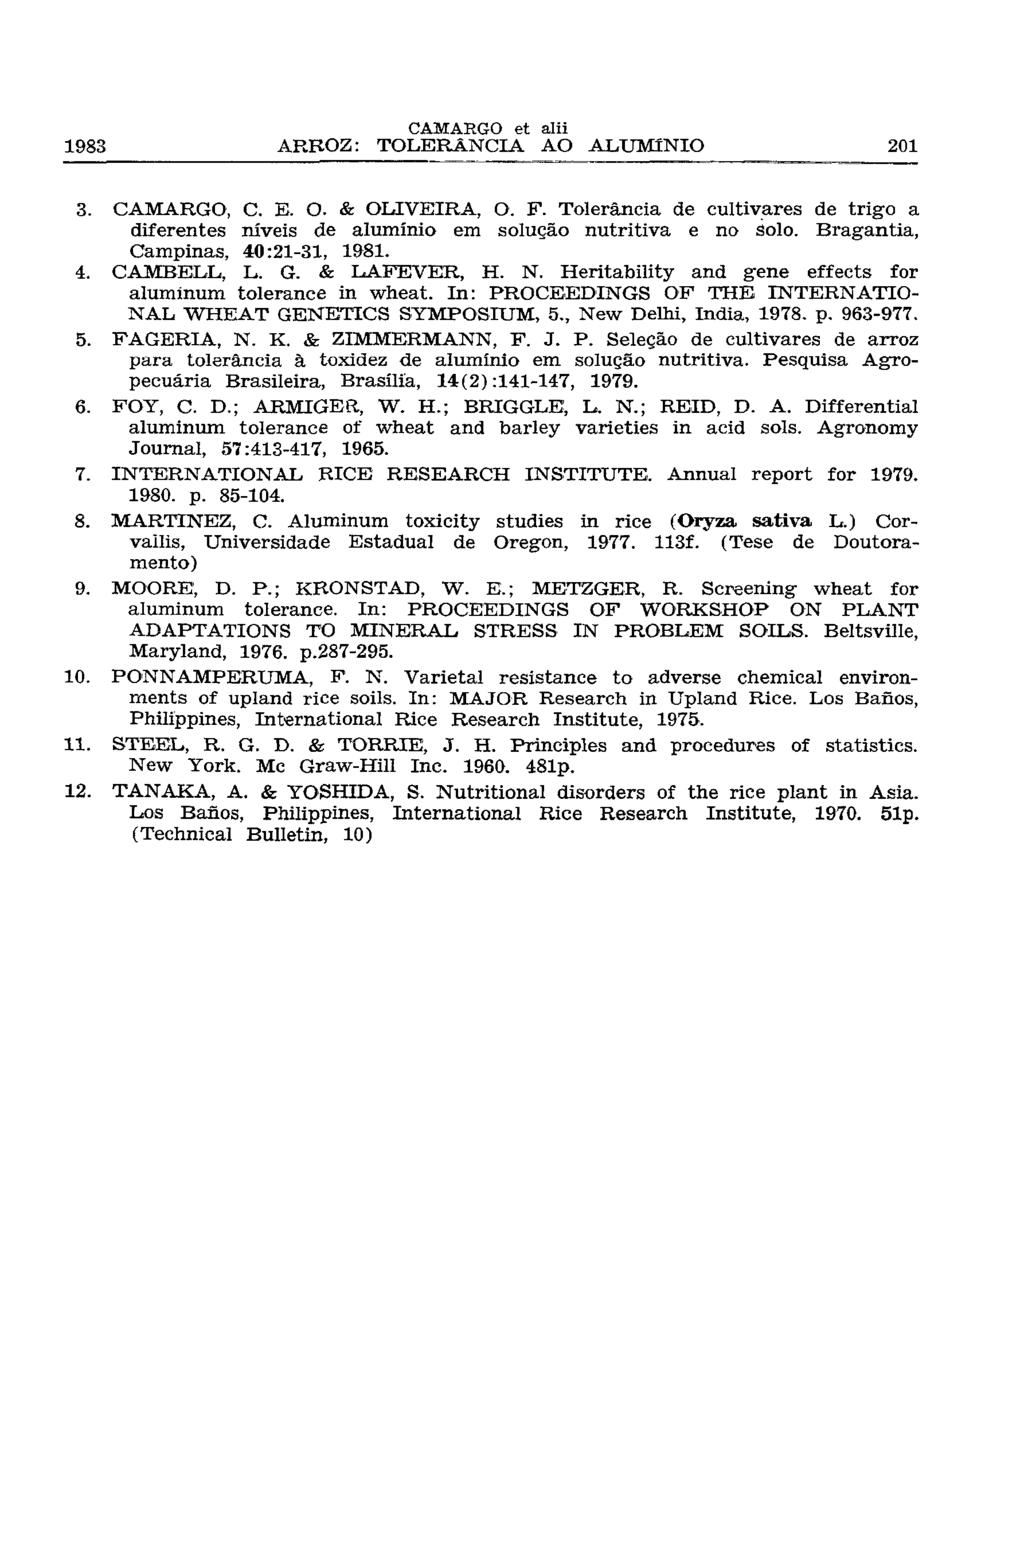 3. CAMARGO, C. E. O. & OLIVEIRA, O. F. Tolerância de cultivares de trigo a diferentes níveis de alumínio em solução nutritiva e no solo. Bragantia, Campinas, 40:21-31, 1981. 4. CAMBELL, L. G.